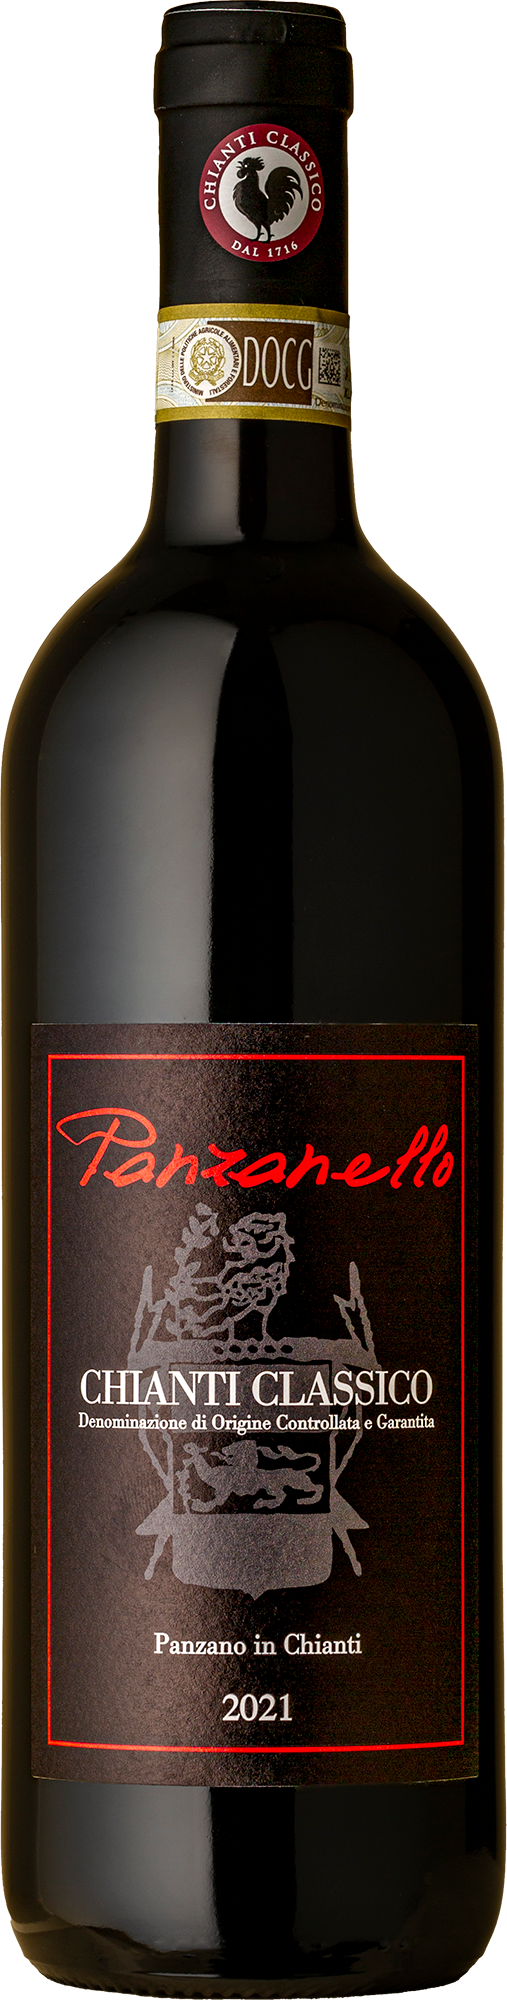 Panzanello - Chianti Classico 2021 Red Wine